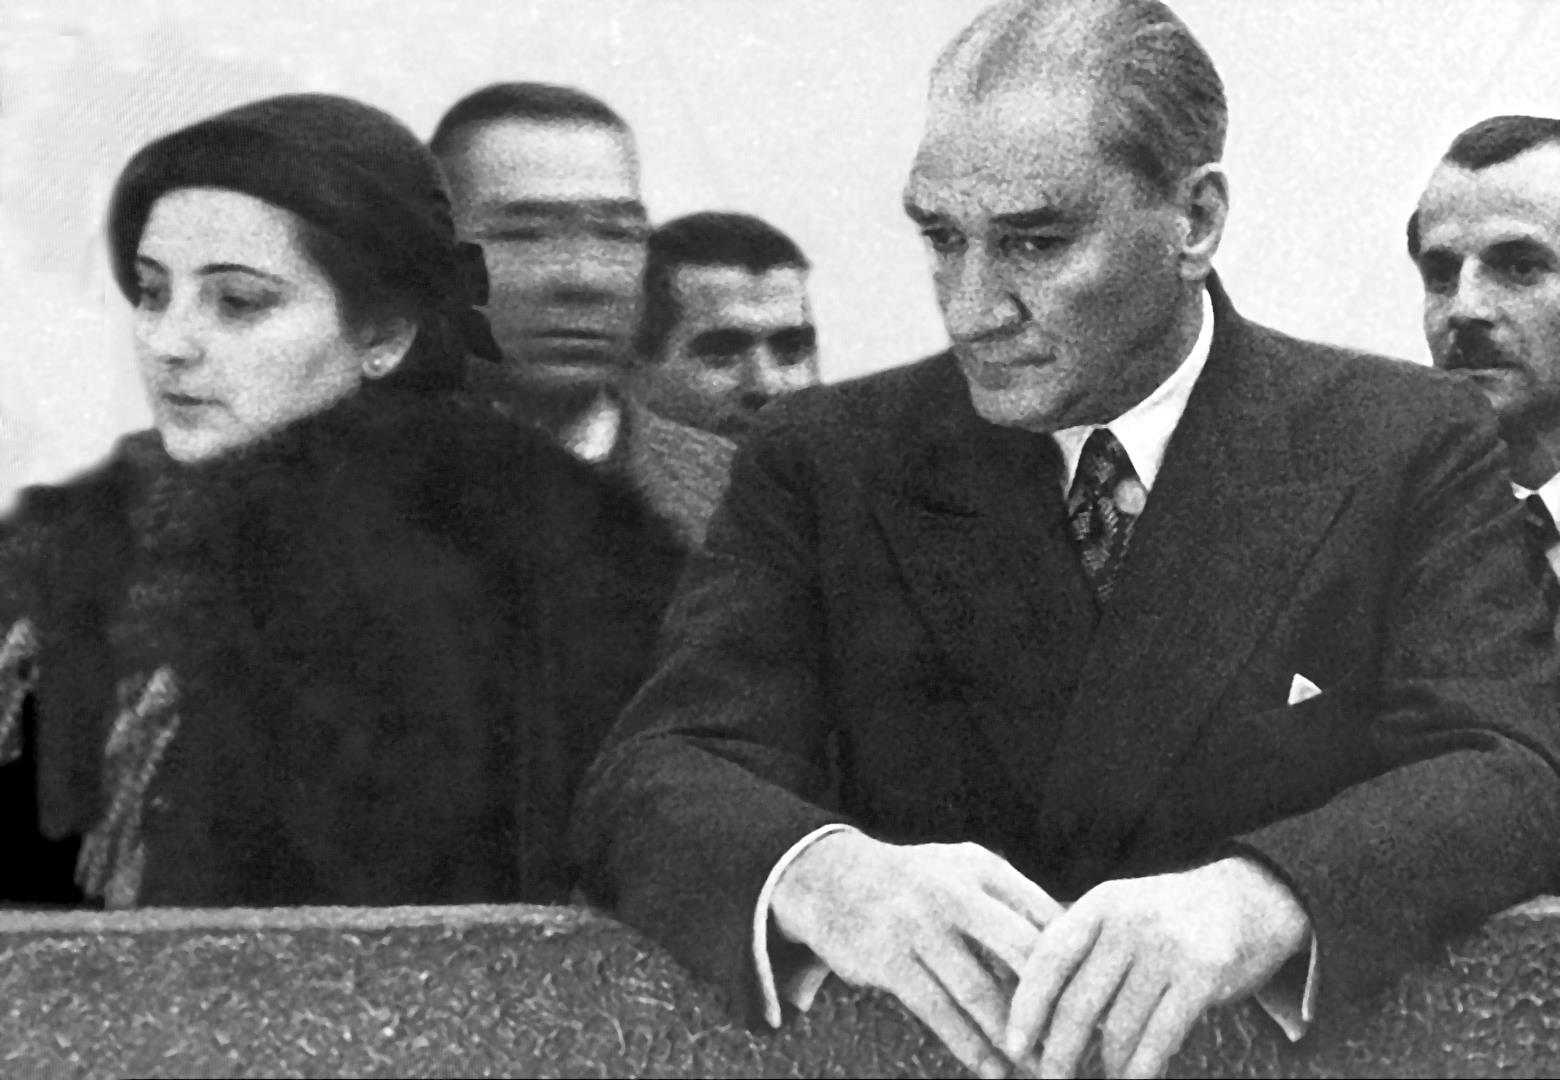 Afet İnan: Atatürk Hakkında Hatıralar ve Belgeler 